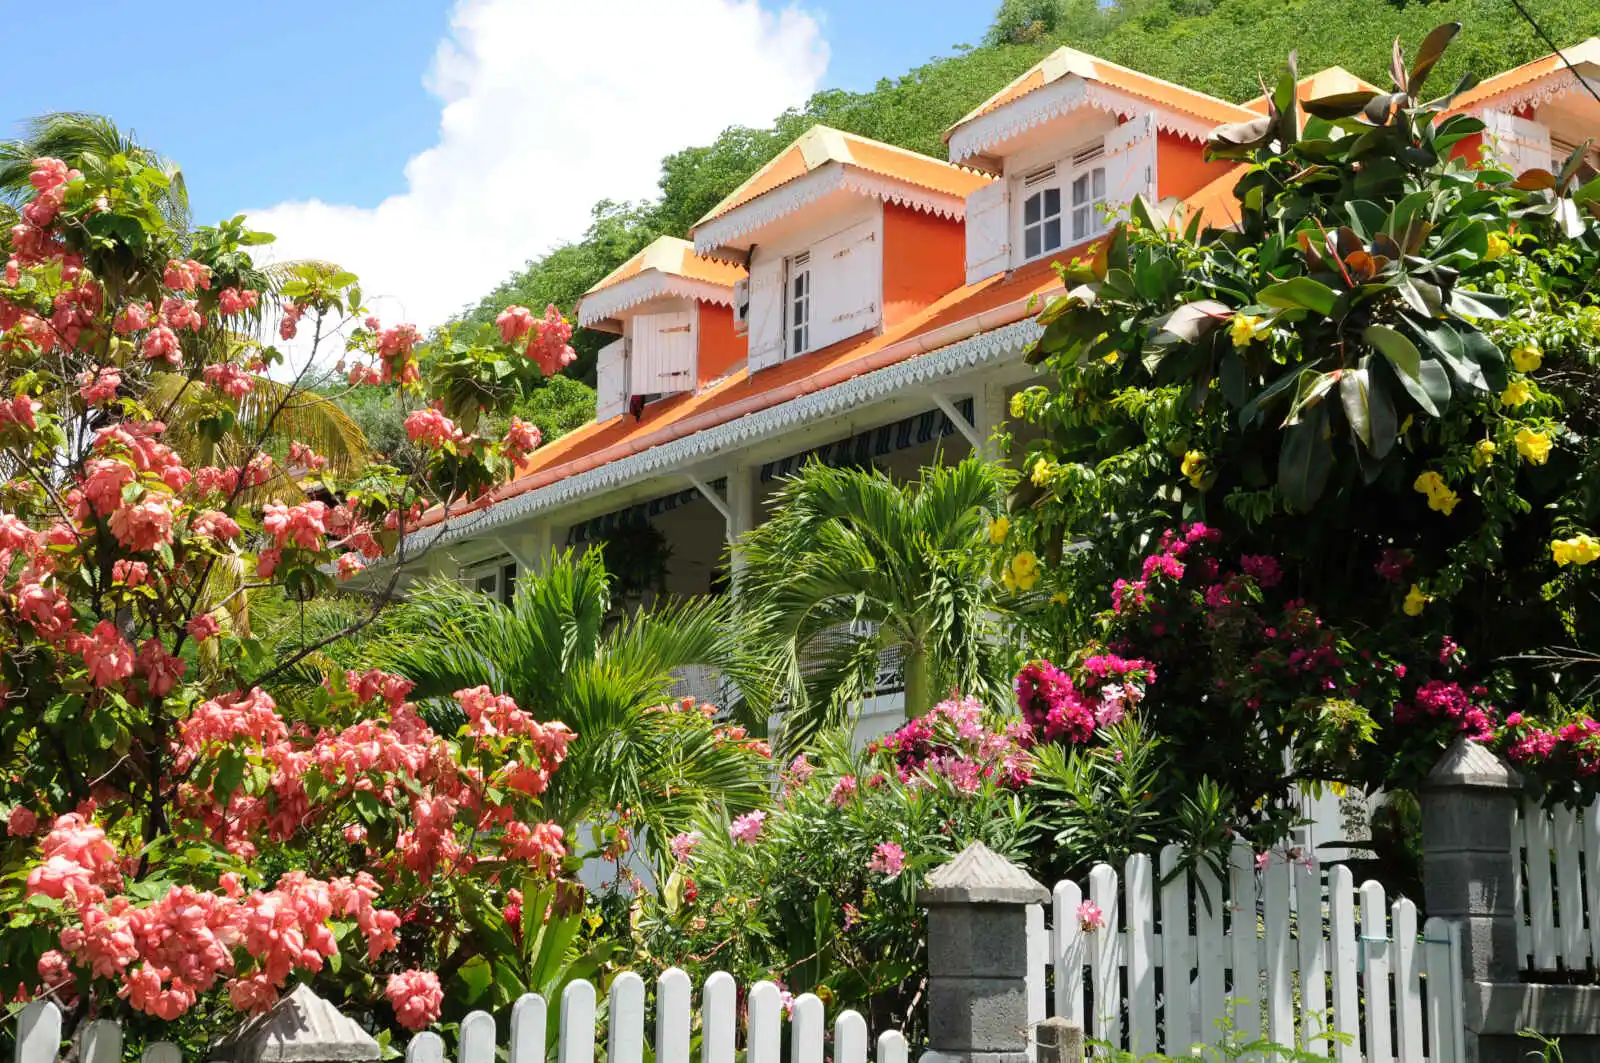 Maison dans un jardin tropical, Les Saintes, Guadeloupe